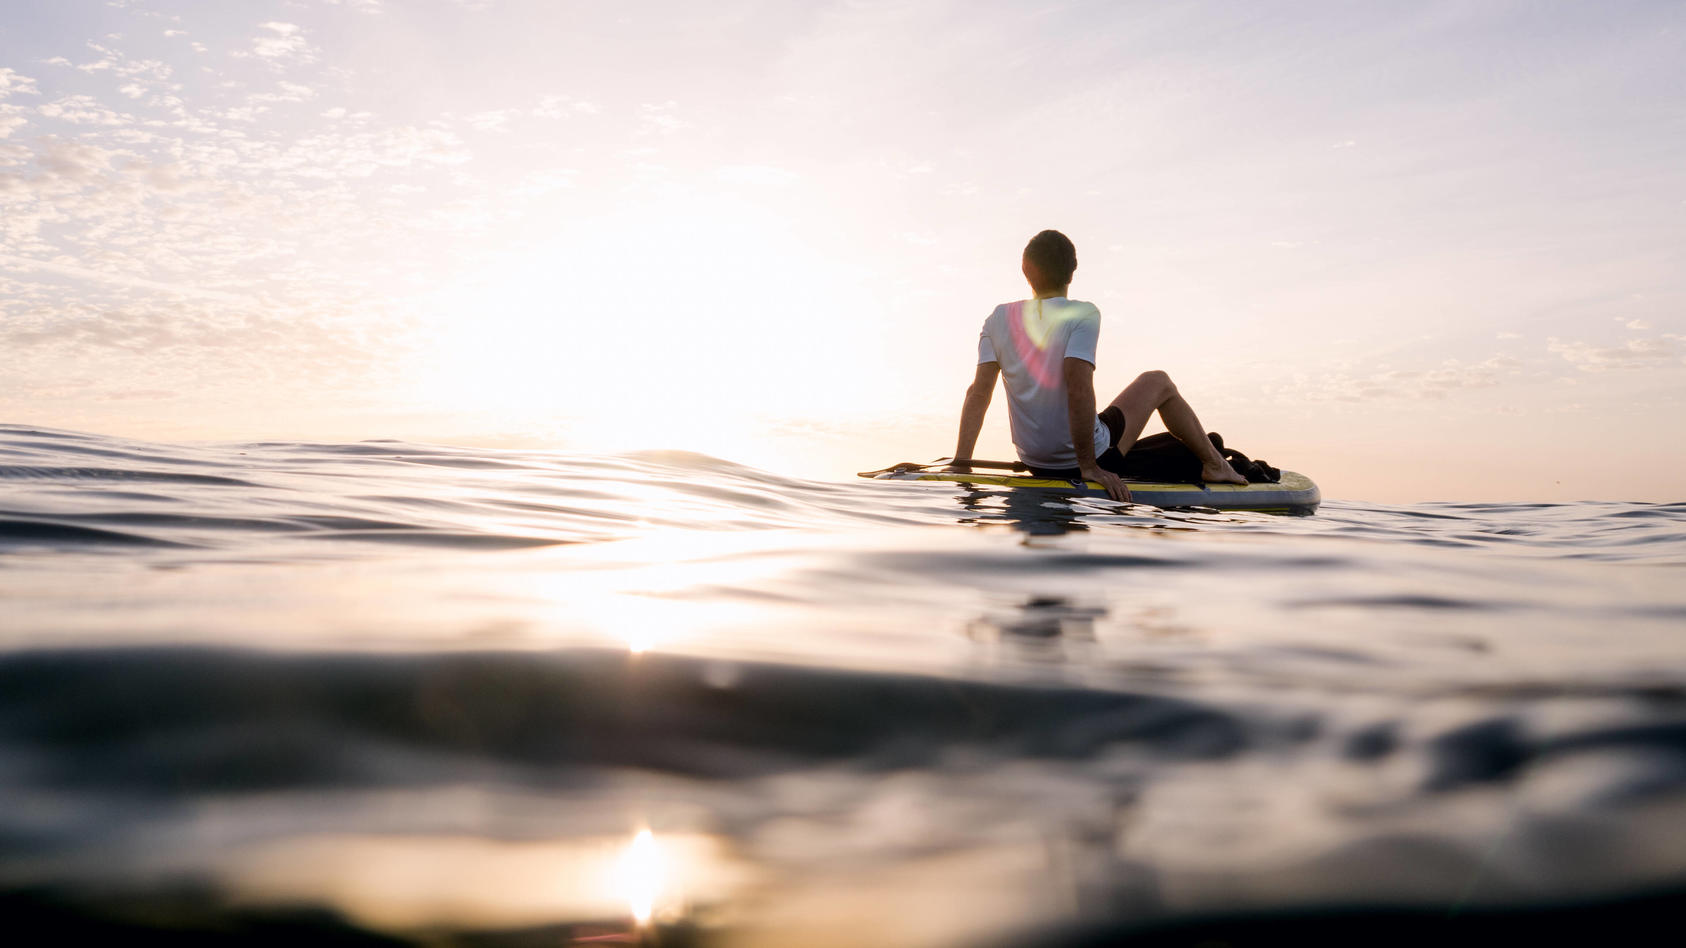 Auf dem offenen Meer entspannt ein Mann auf einem Surfboard, man sieht im Hintergrund wie die Sonne untergeht.